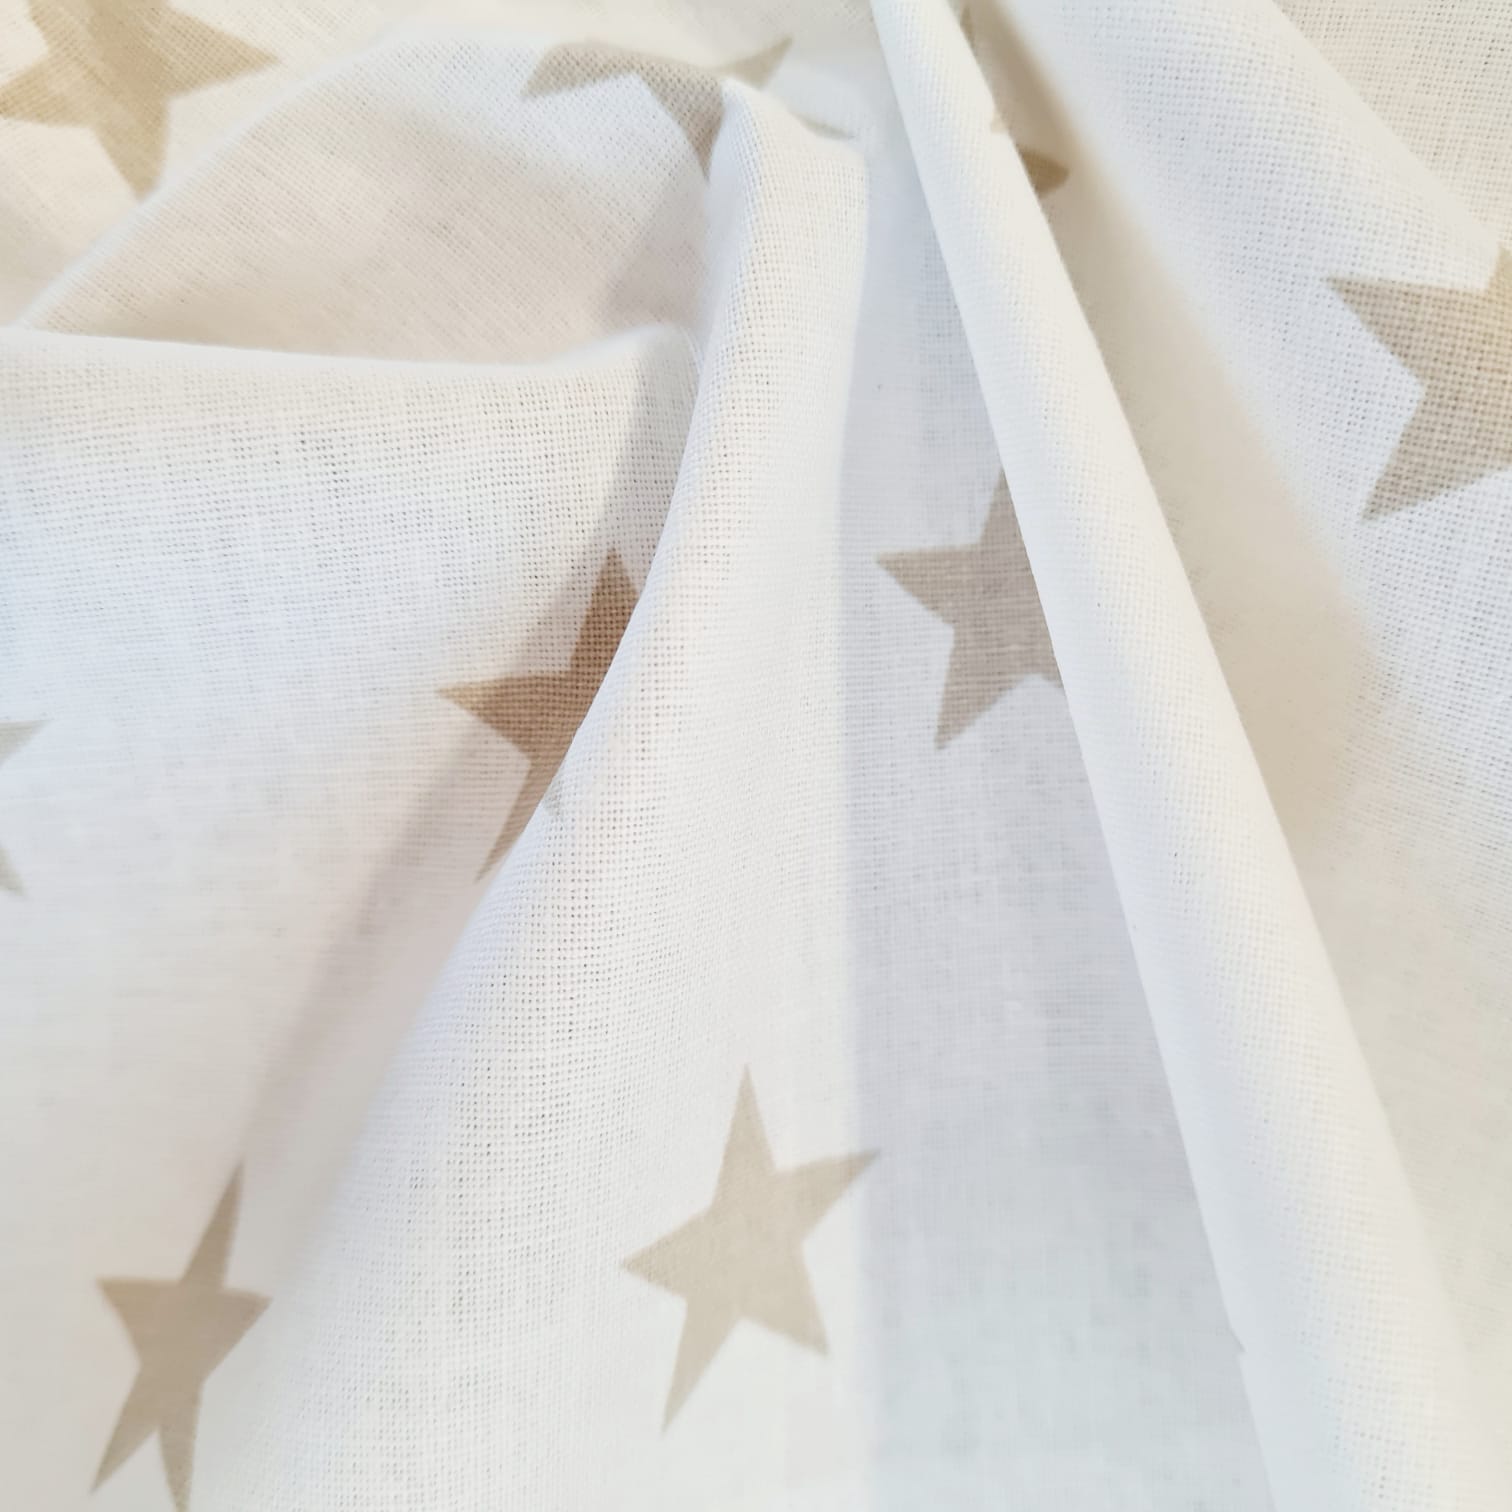 Kuezstück Stoff Baumwolle Sterne Stars weiss beige groß 2,2cm 1m x 1,60m